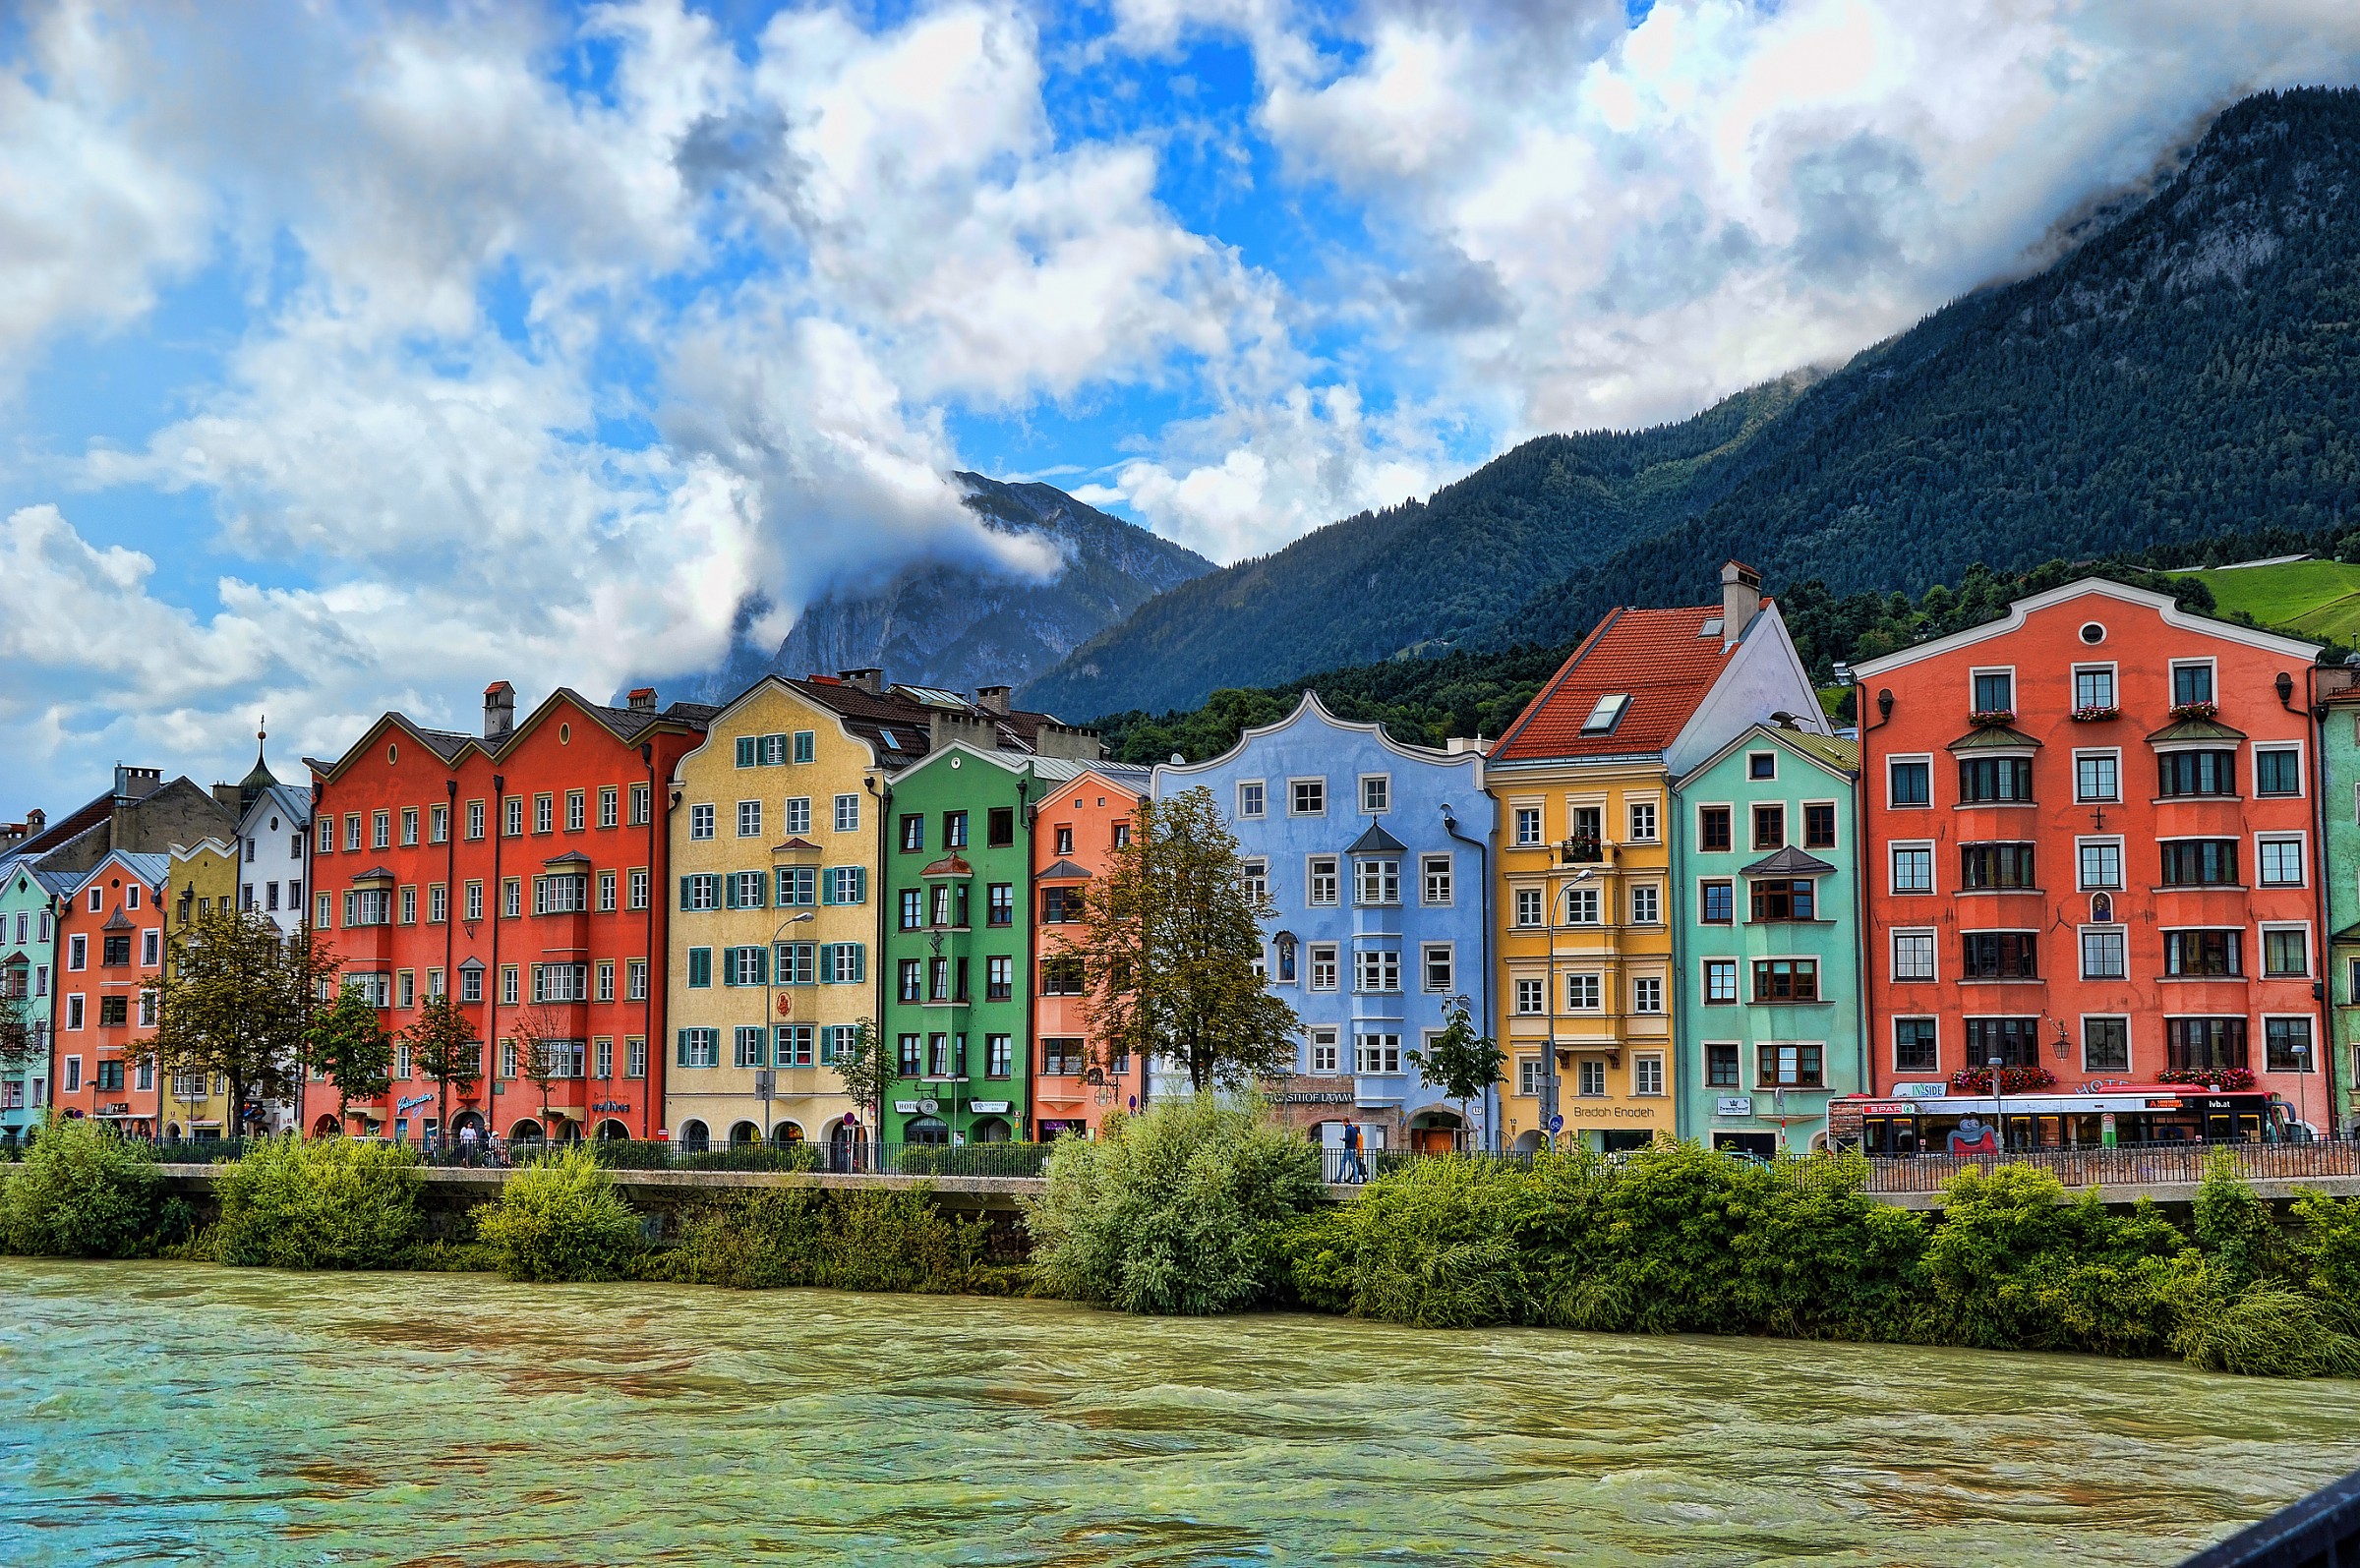 Along the river in Innsbruck...